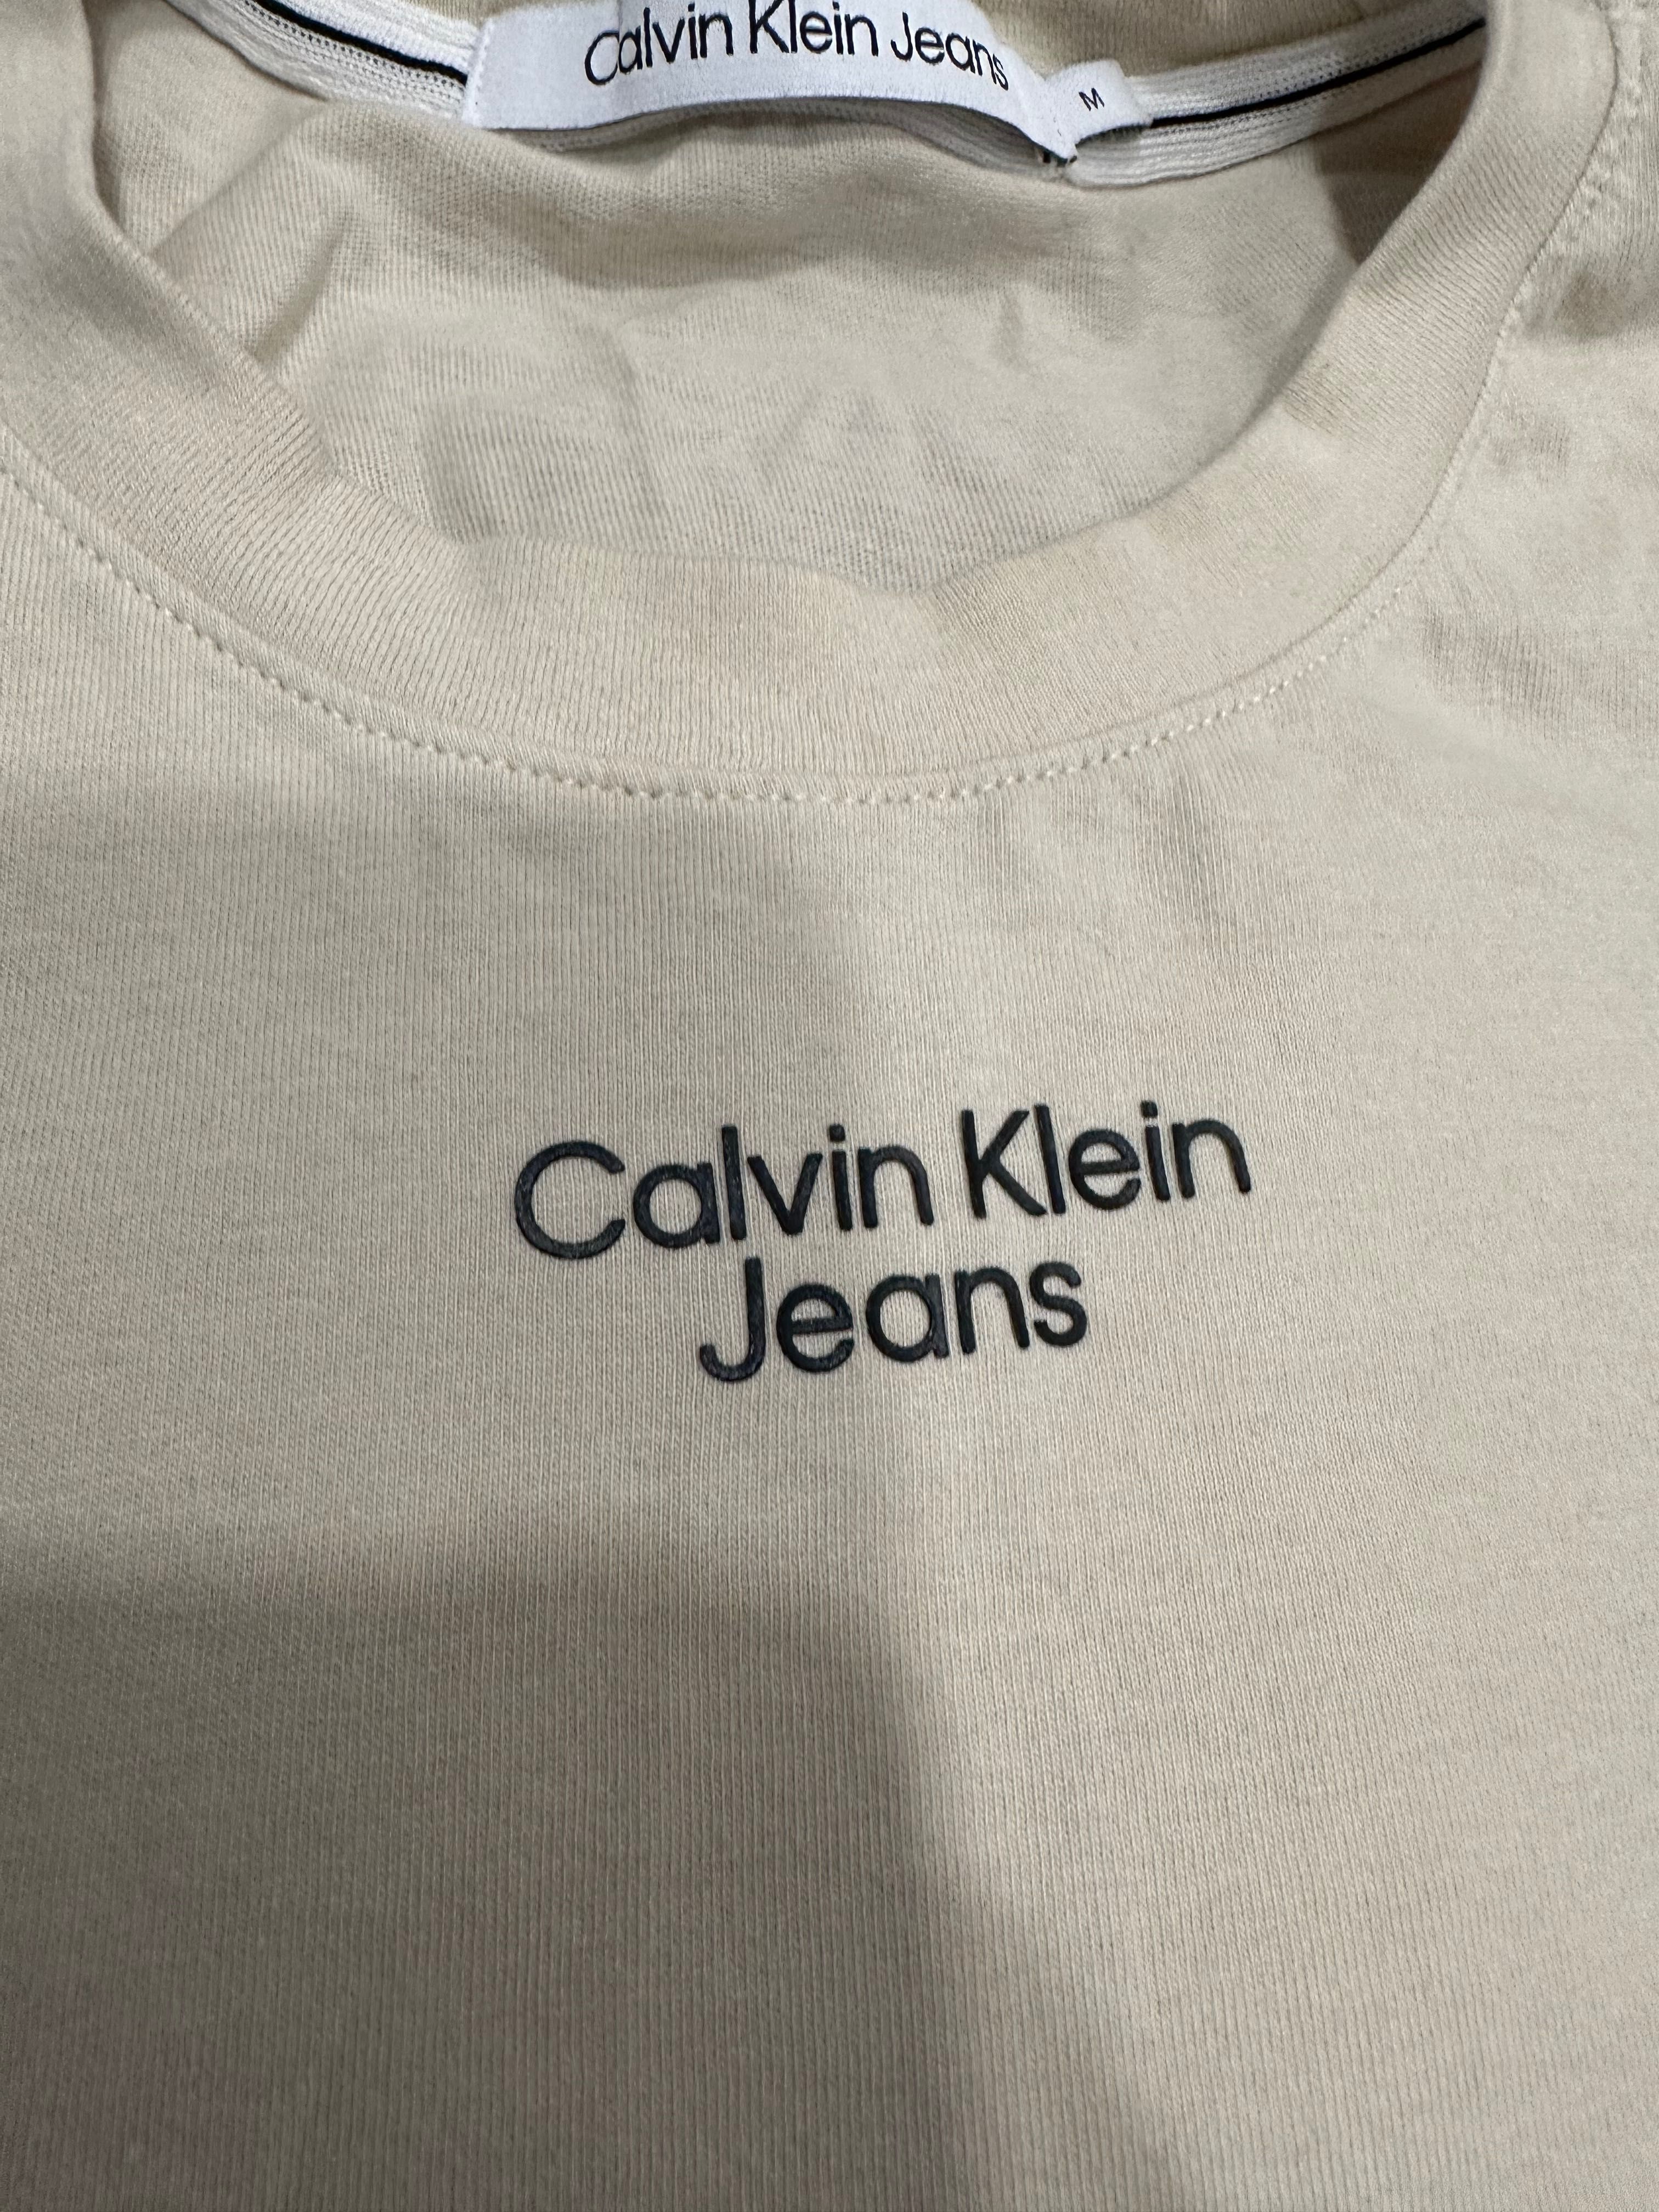 Мужская футболка Calvin Klein размер М